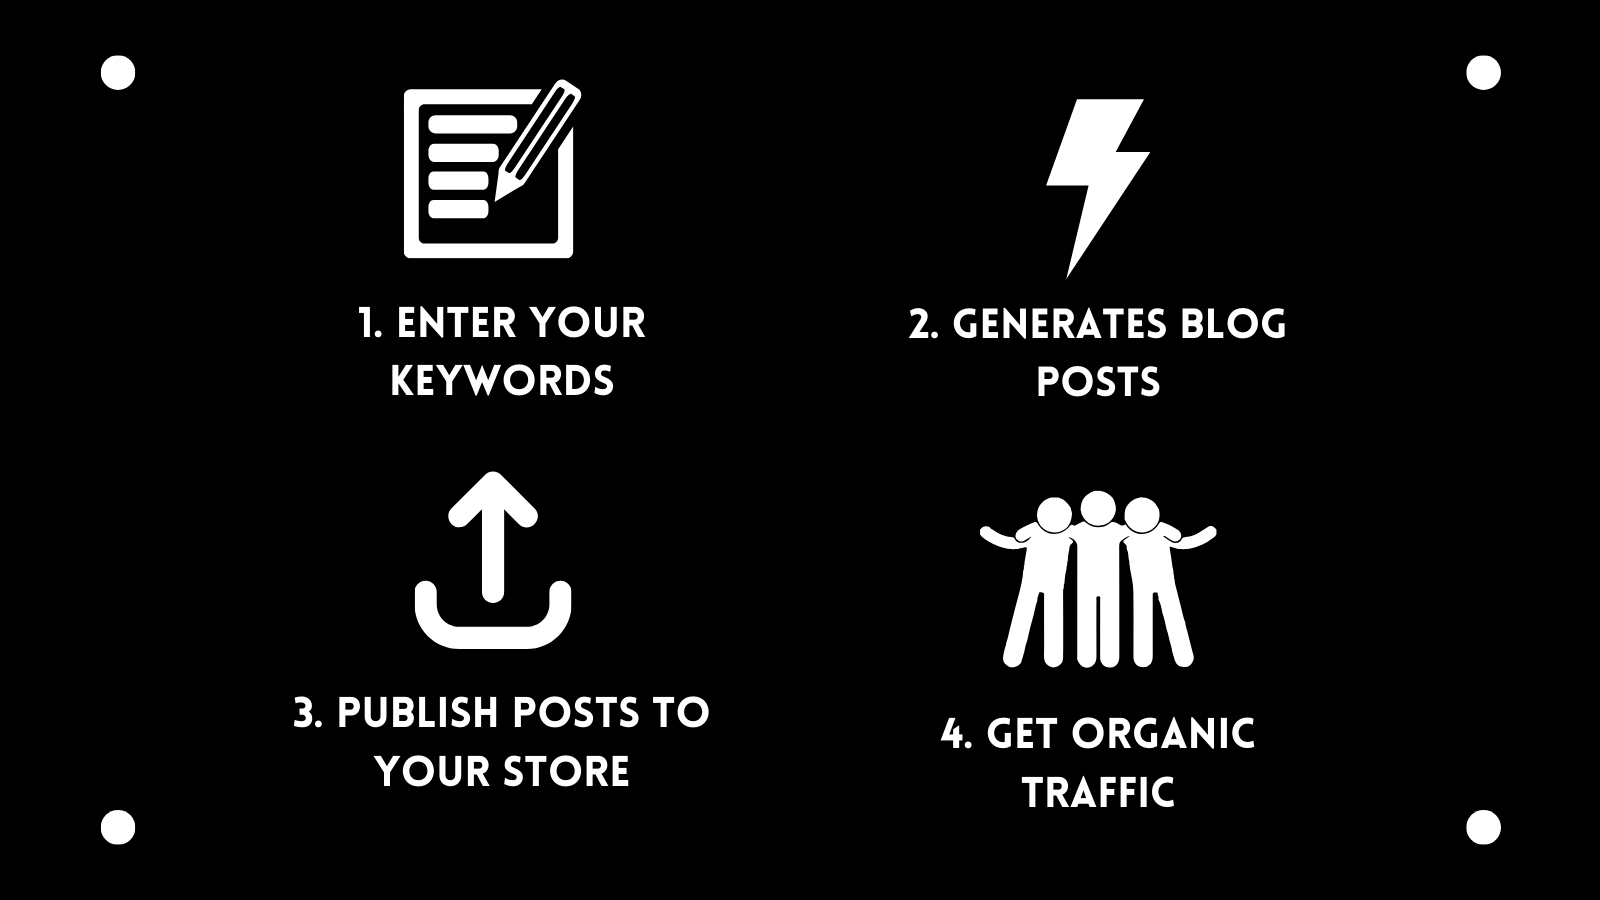 Ange nyckelord, generera blogginlägg, publicera inlägg till din butik